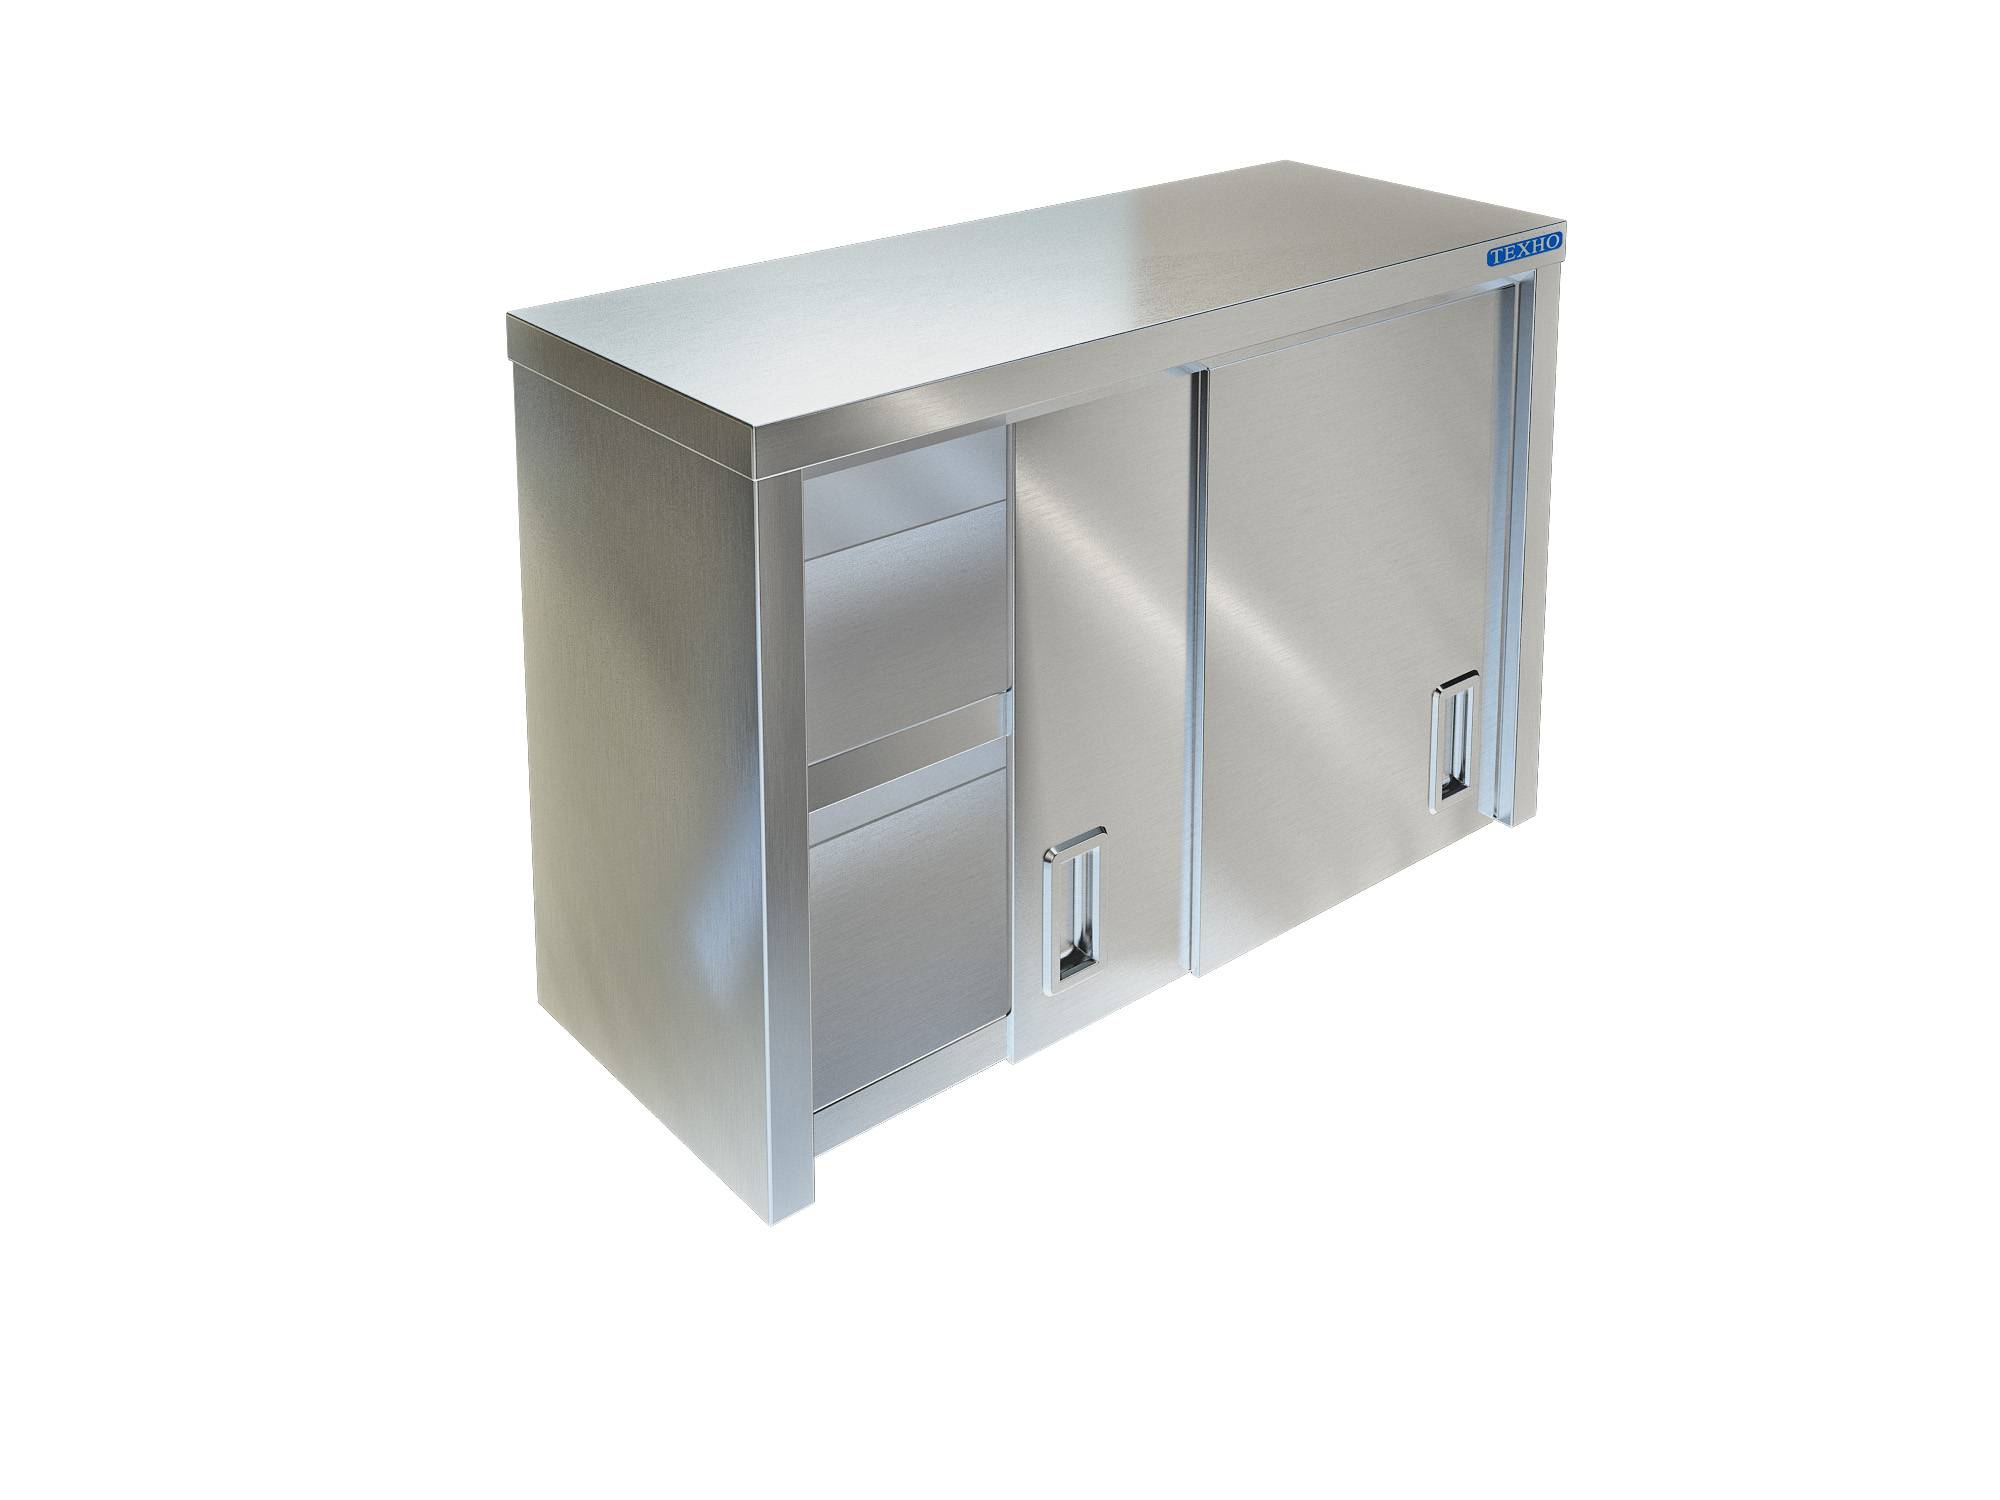 Фото - полка-шкаф для кухни с дверками из нержавейки пн-122/700 (700x350x600 мм)